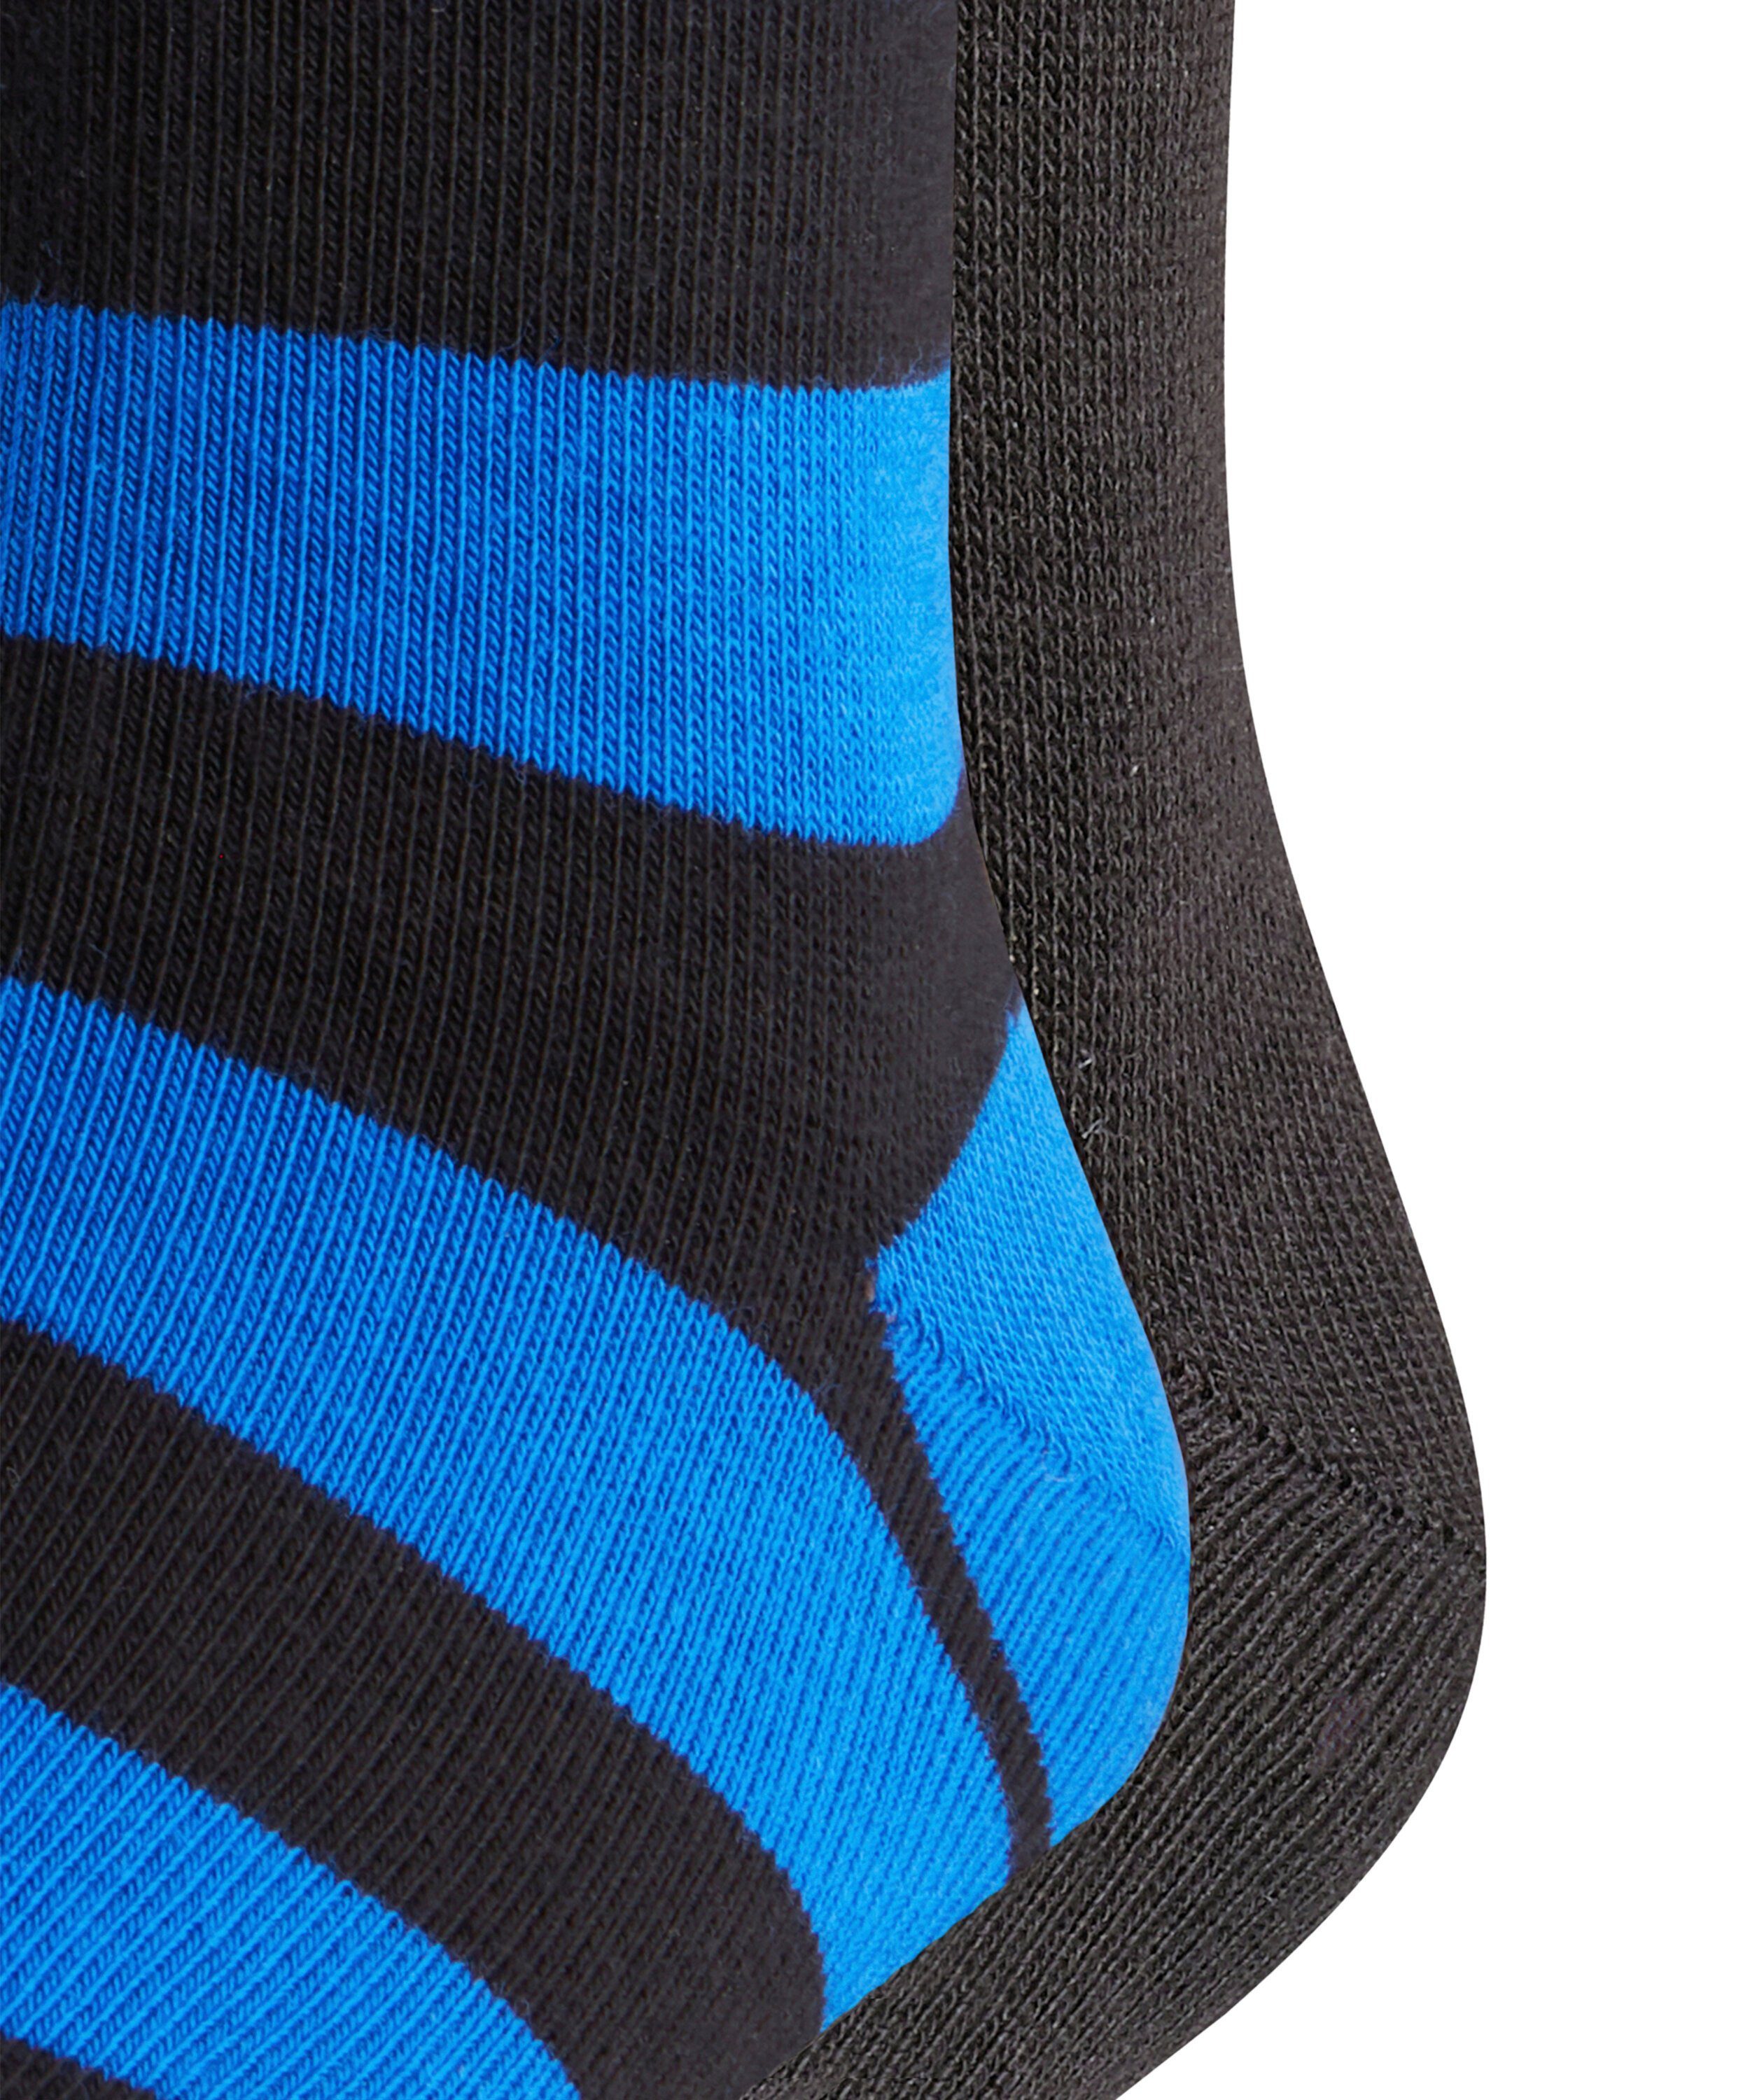 FALKE Socken Happy black 2-Pack (3000) (2-Paar) Stripe